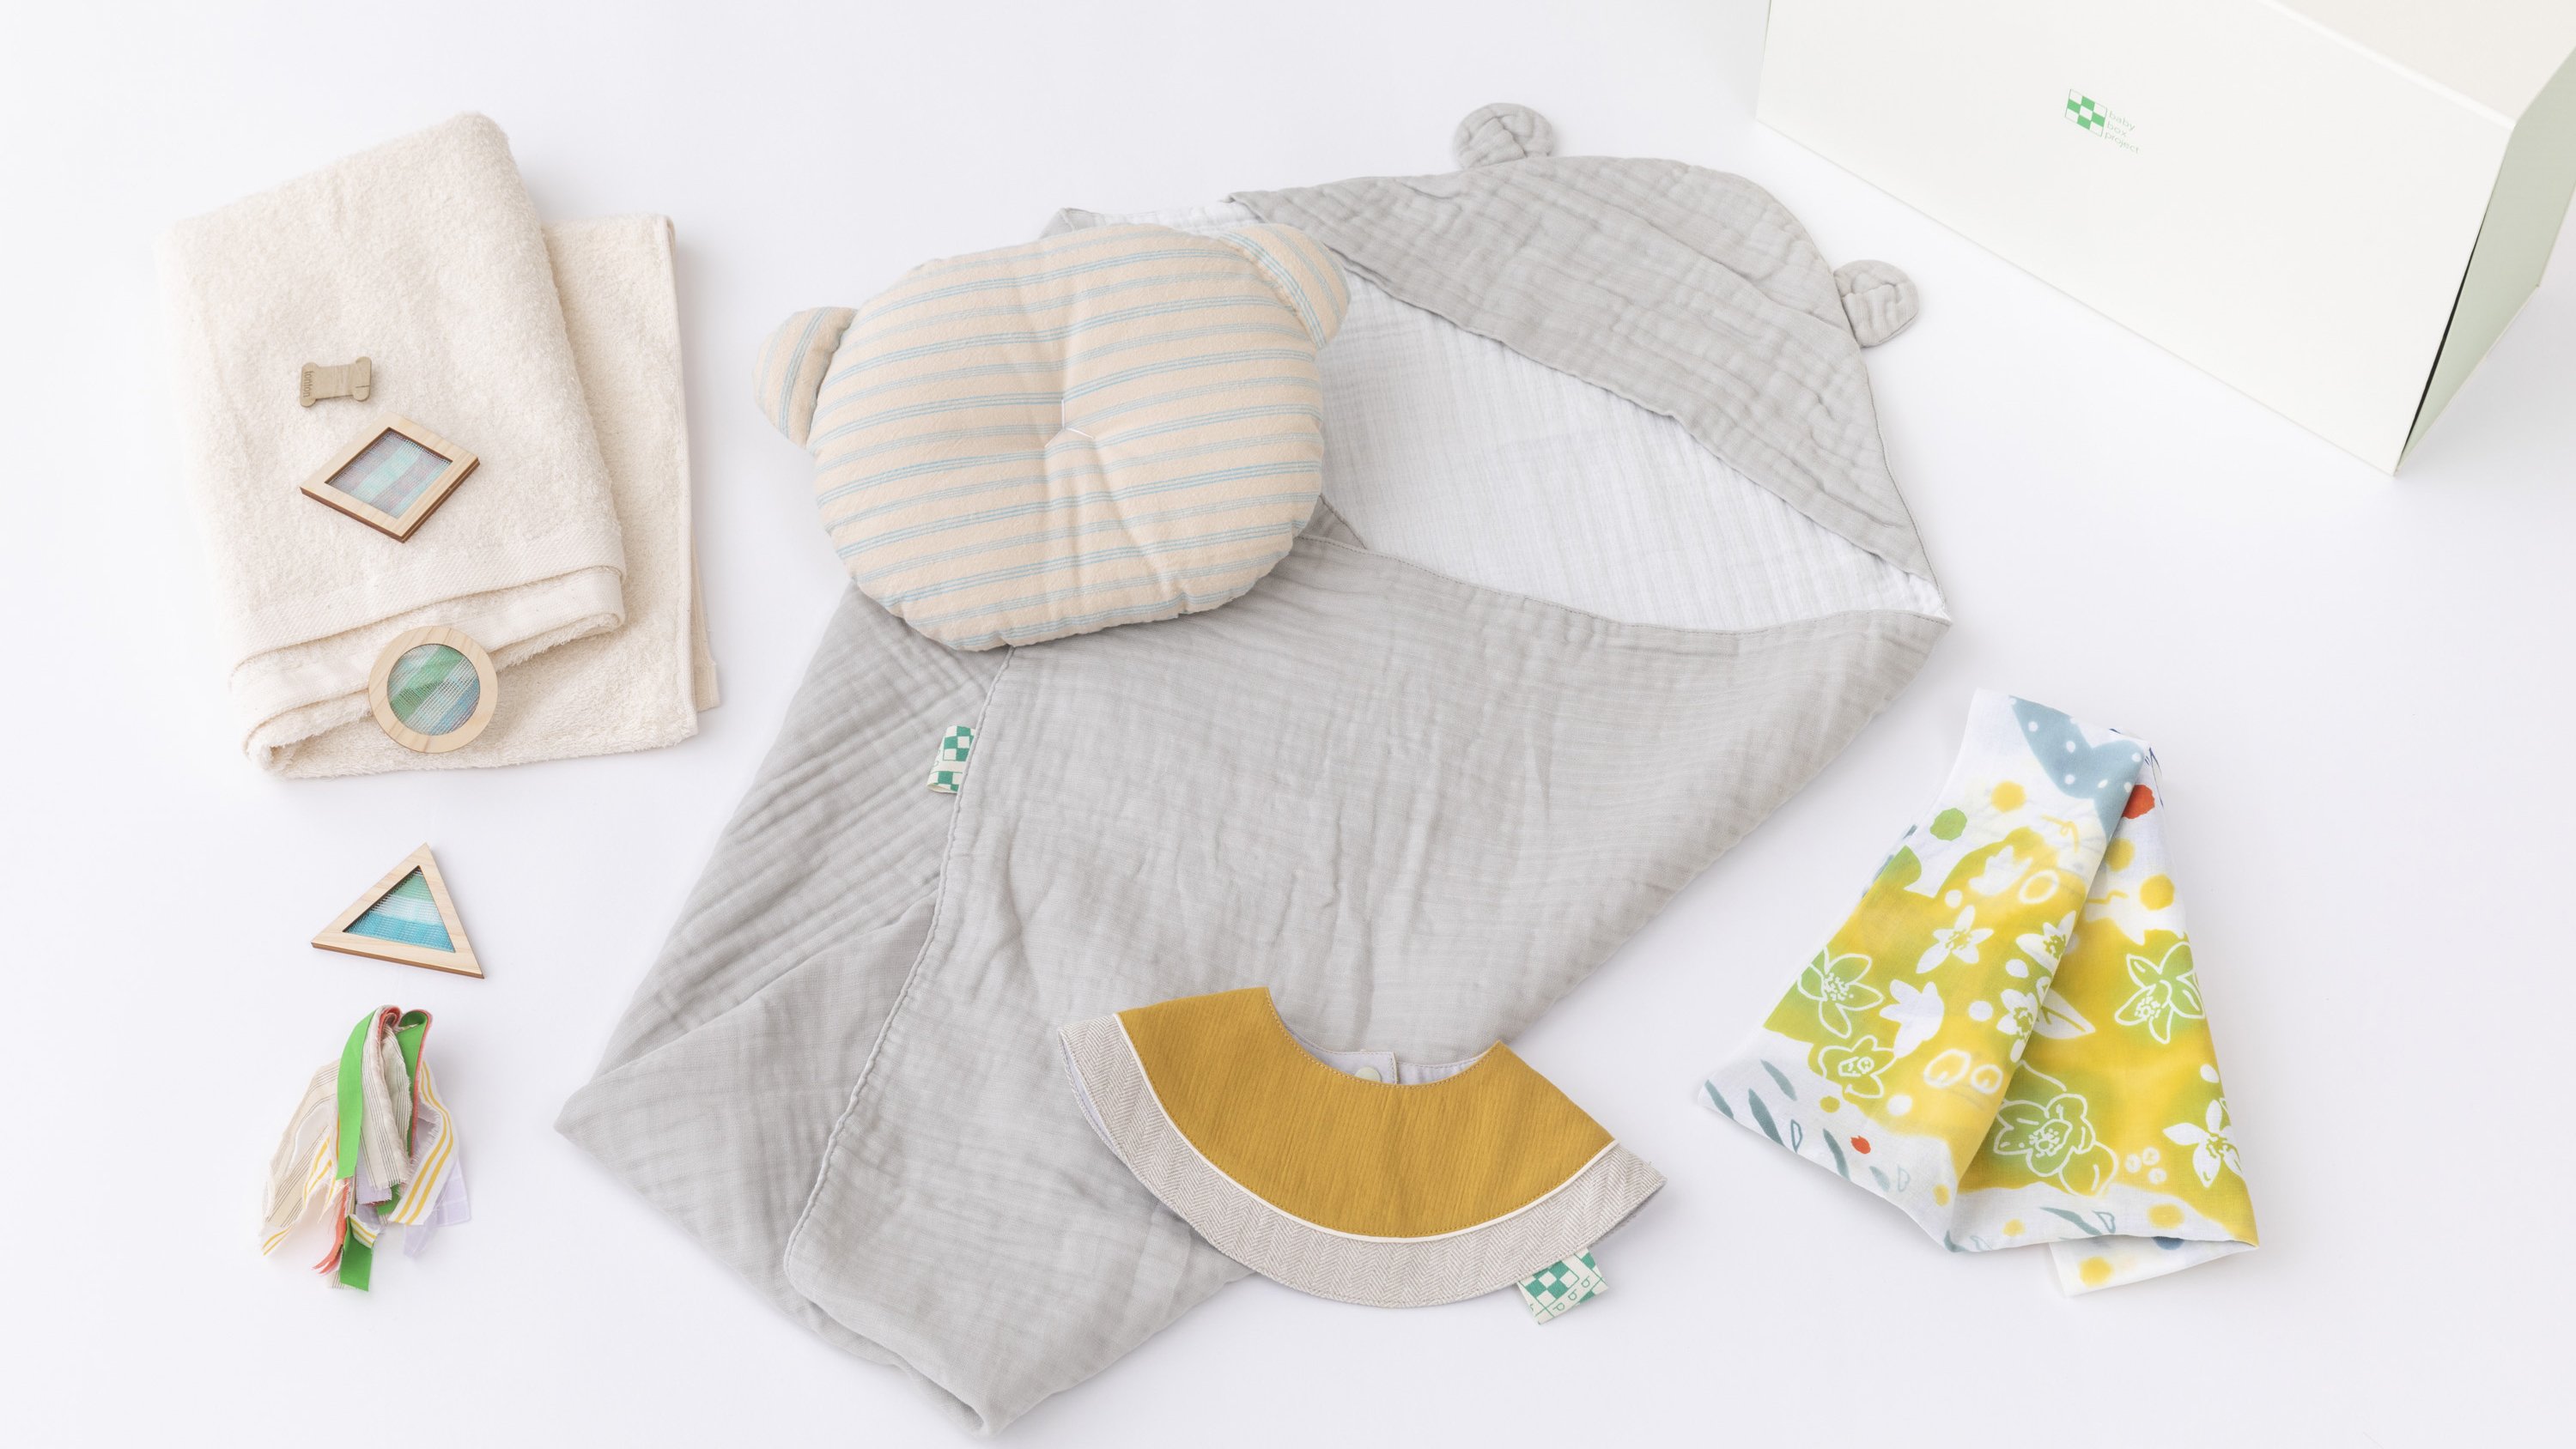 浜松の遠州織物でつくった赤ちゃん用品セット 『はままつ BABYBOX』を